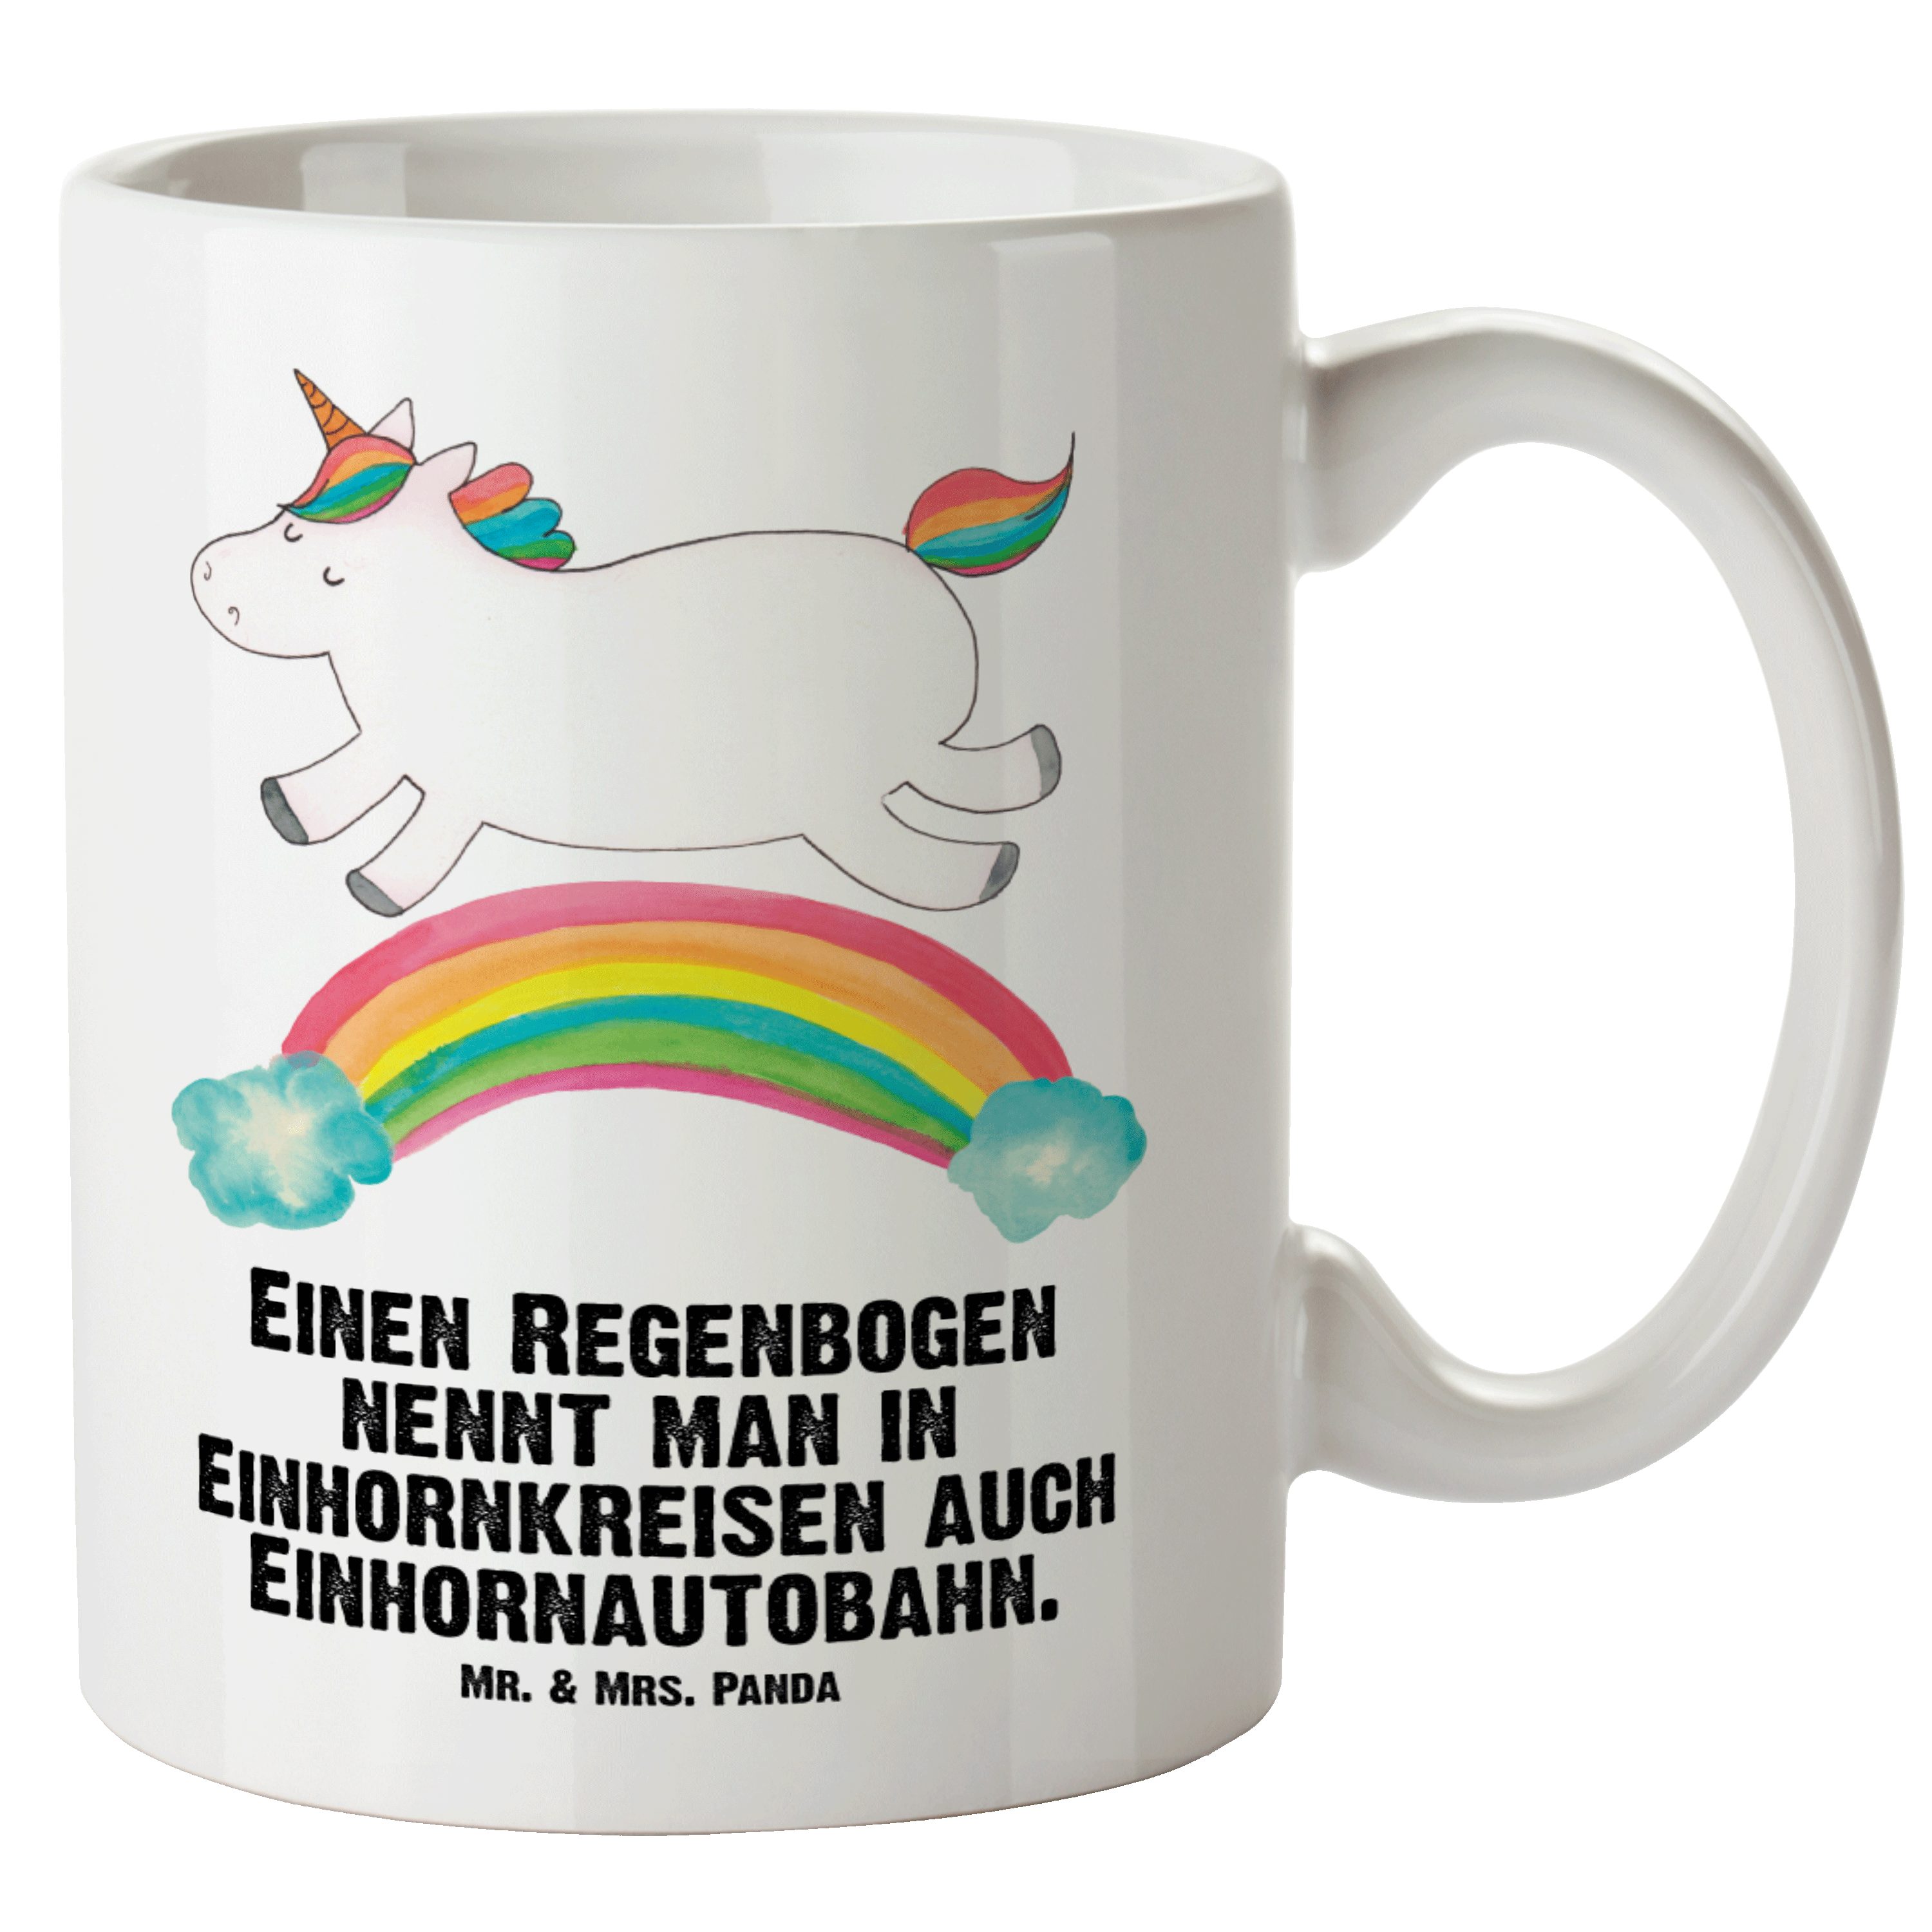 Mr. & Mrs. Panda Tasse Einhorn Regenbogen - Weiß - Geschenk, Glitzer, Jumbo Tasse, Erwachsen, XL Tasse Keramik